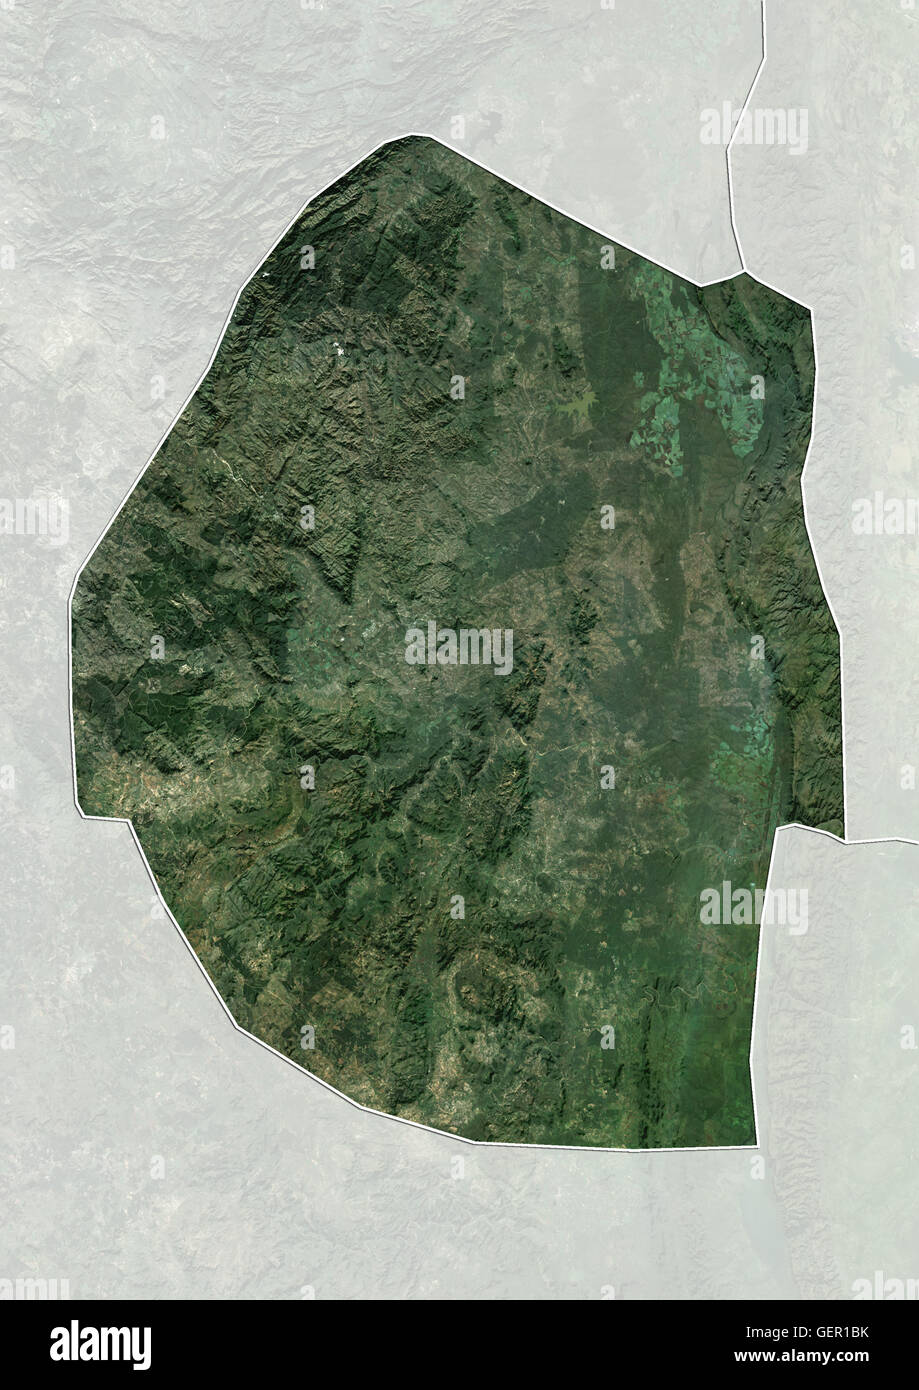 Satellitenansicht von Swasiland (mit Ländergrenzen und Maske). Dieses Bild wurde aus Daten von Landsat-Satelliten erworben erstellt. Stockfoto